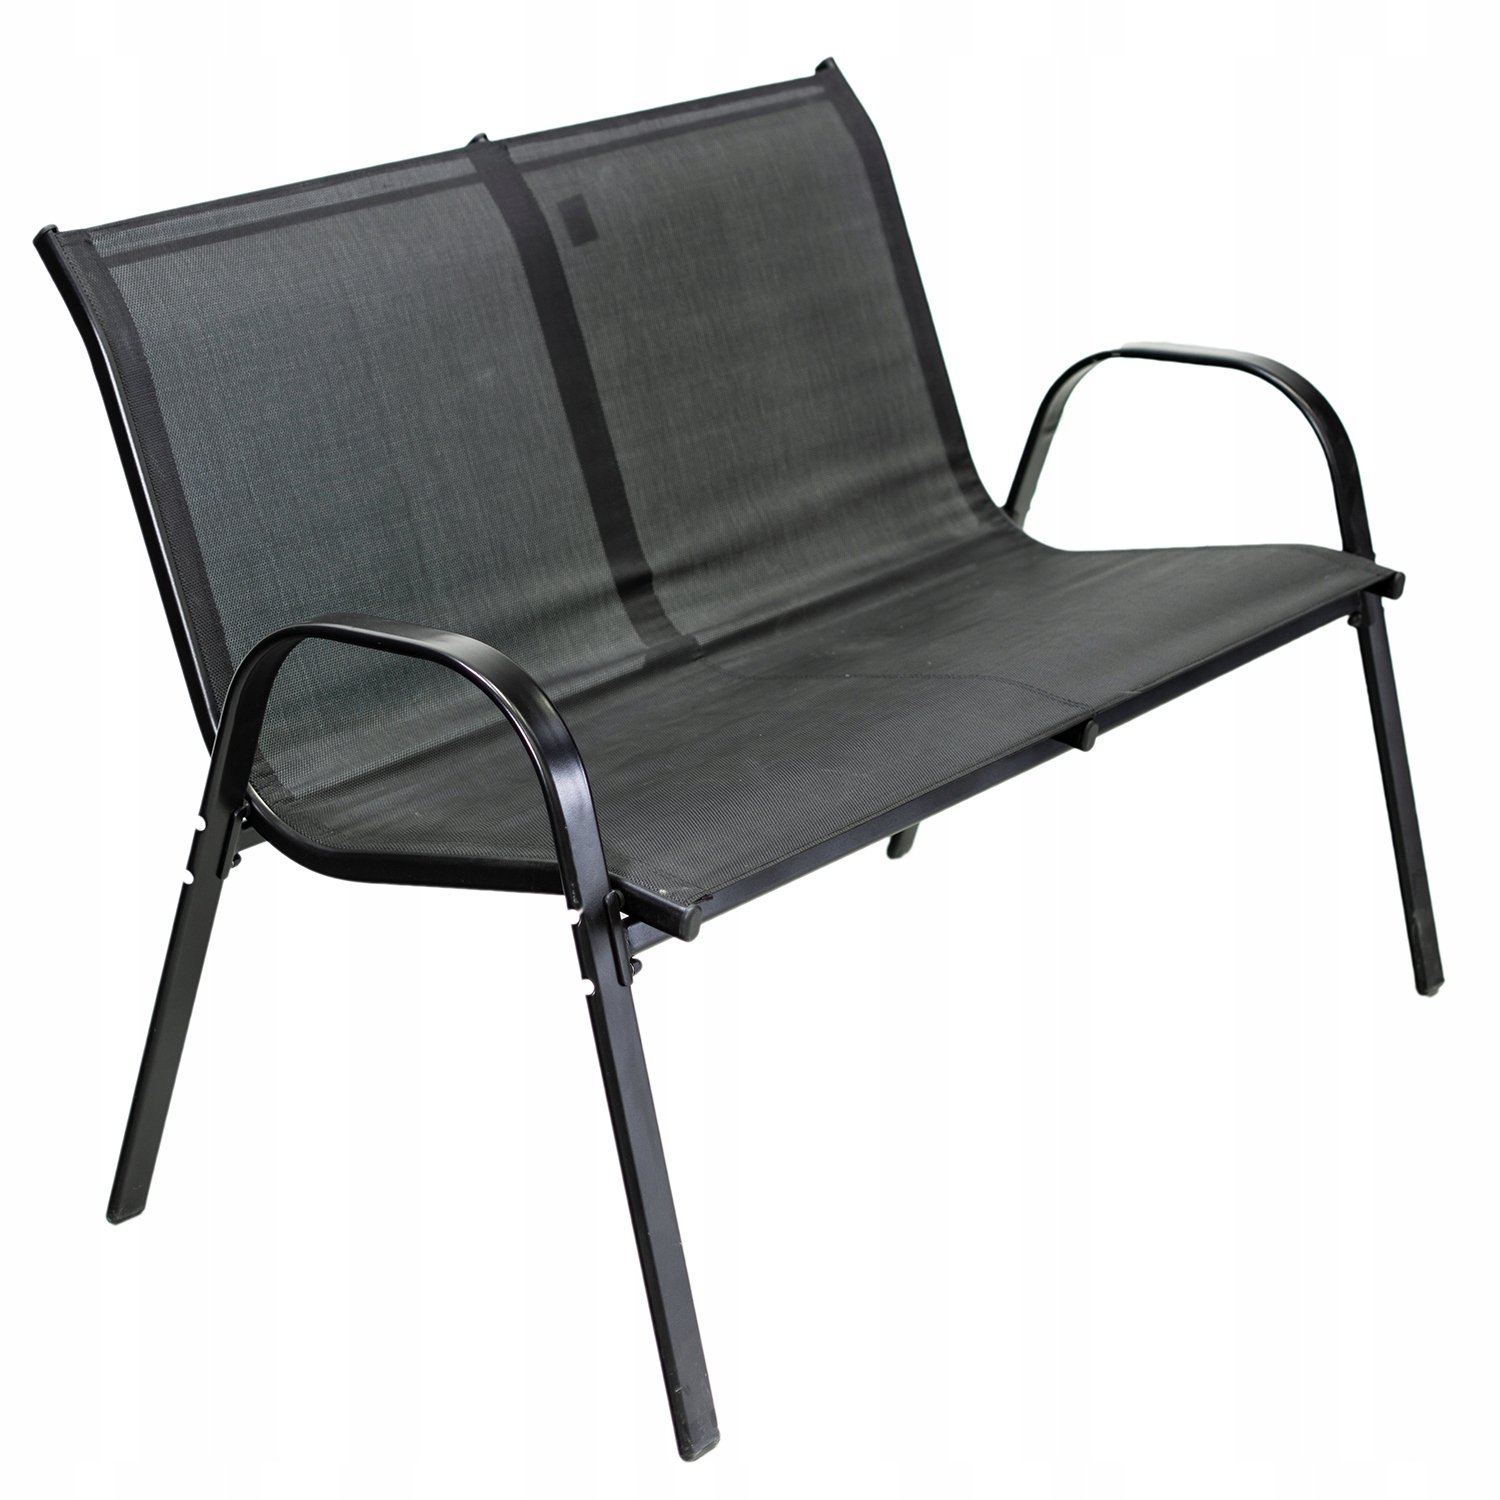 MEBLE OGRODOWE taras zestaw komplet stół krzesł, , OM-967984.5900410967984, Materiał dominujący metal